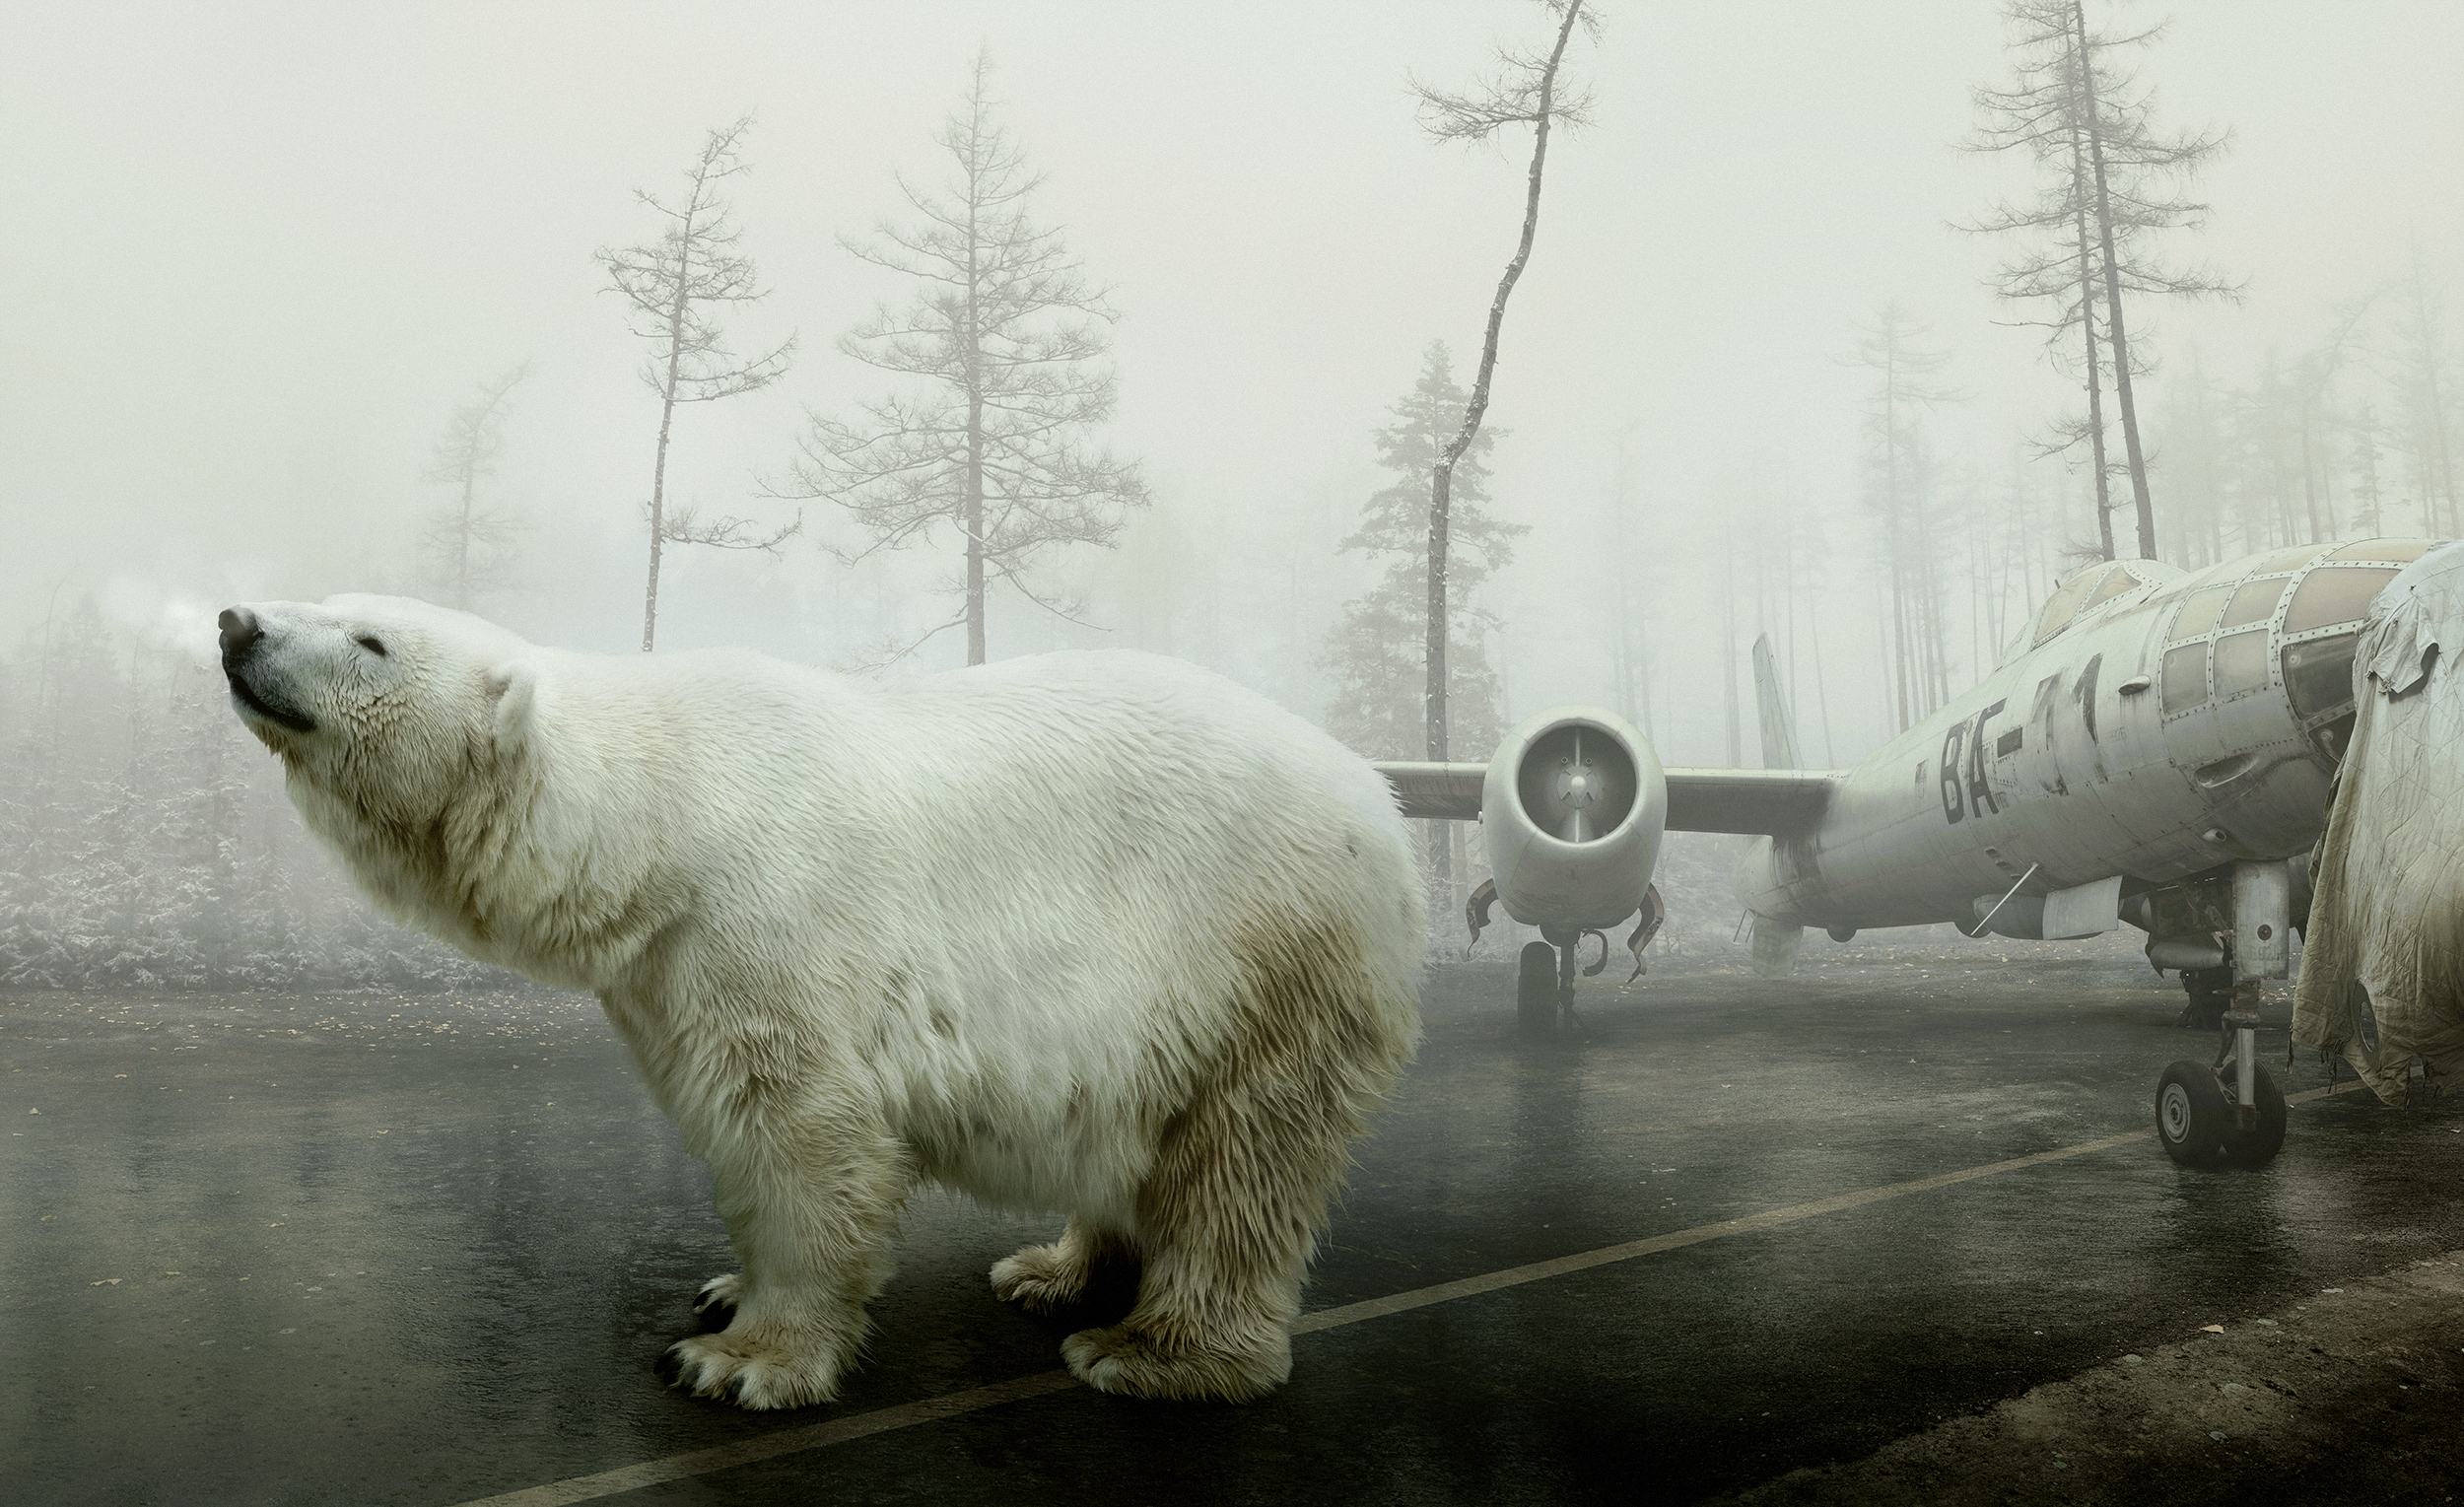 Bear With Me © Martin Stranka